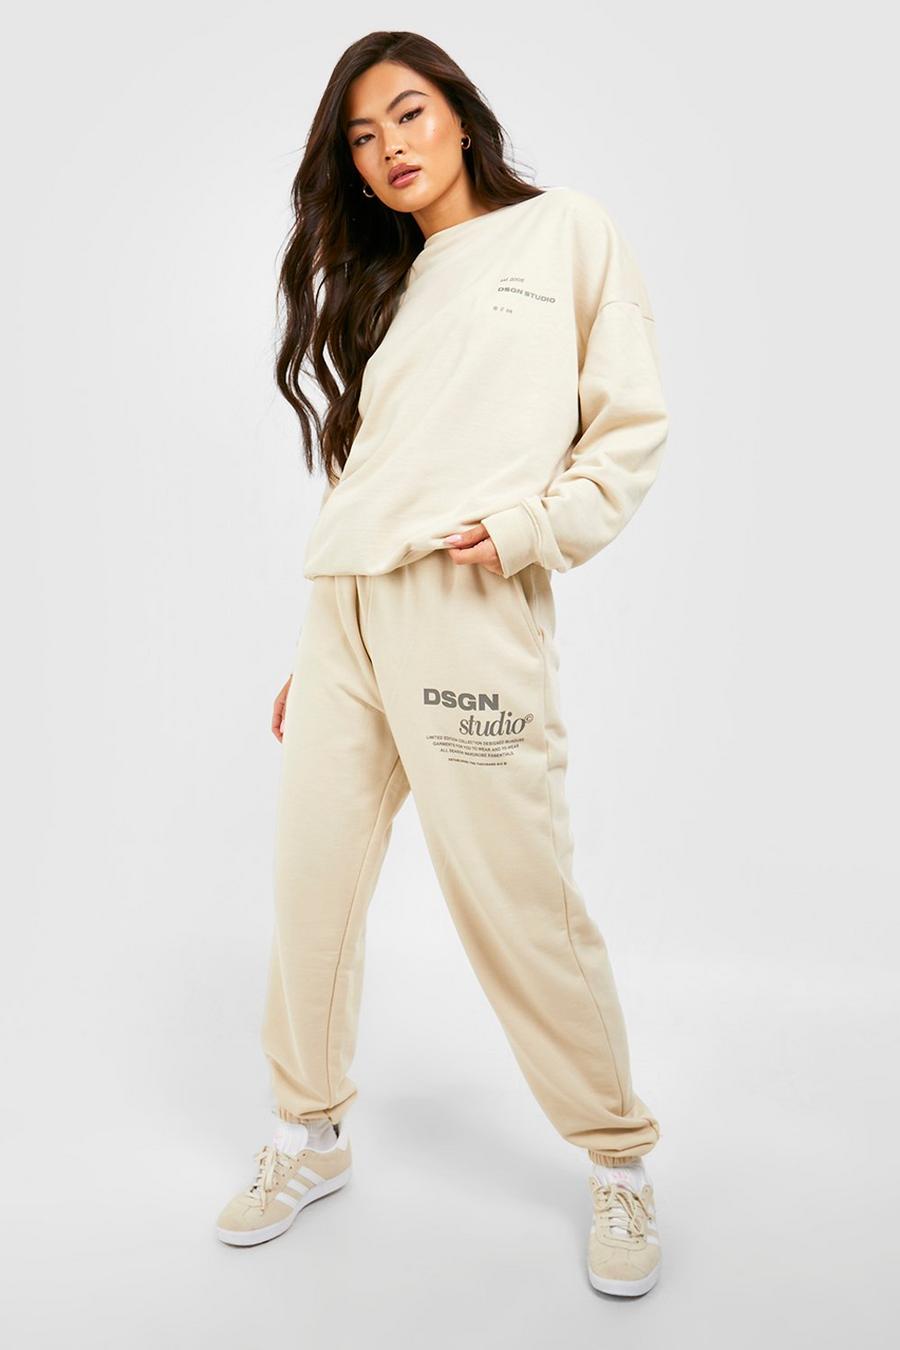 Pantalón deportivo de tela rizo gruesa con botamanga y eslogan Dsgn Studio